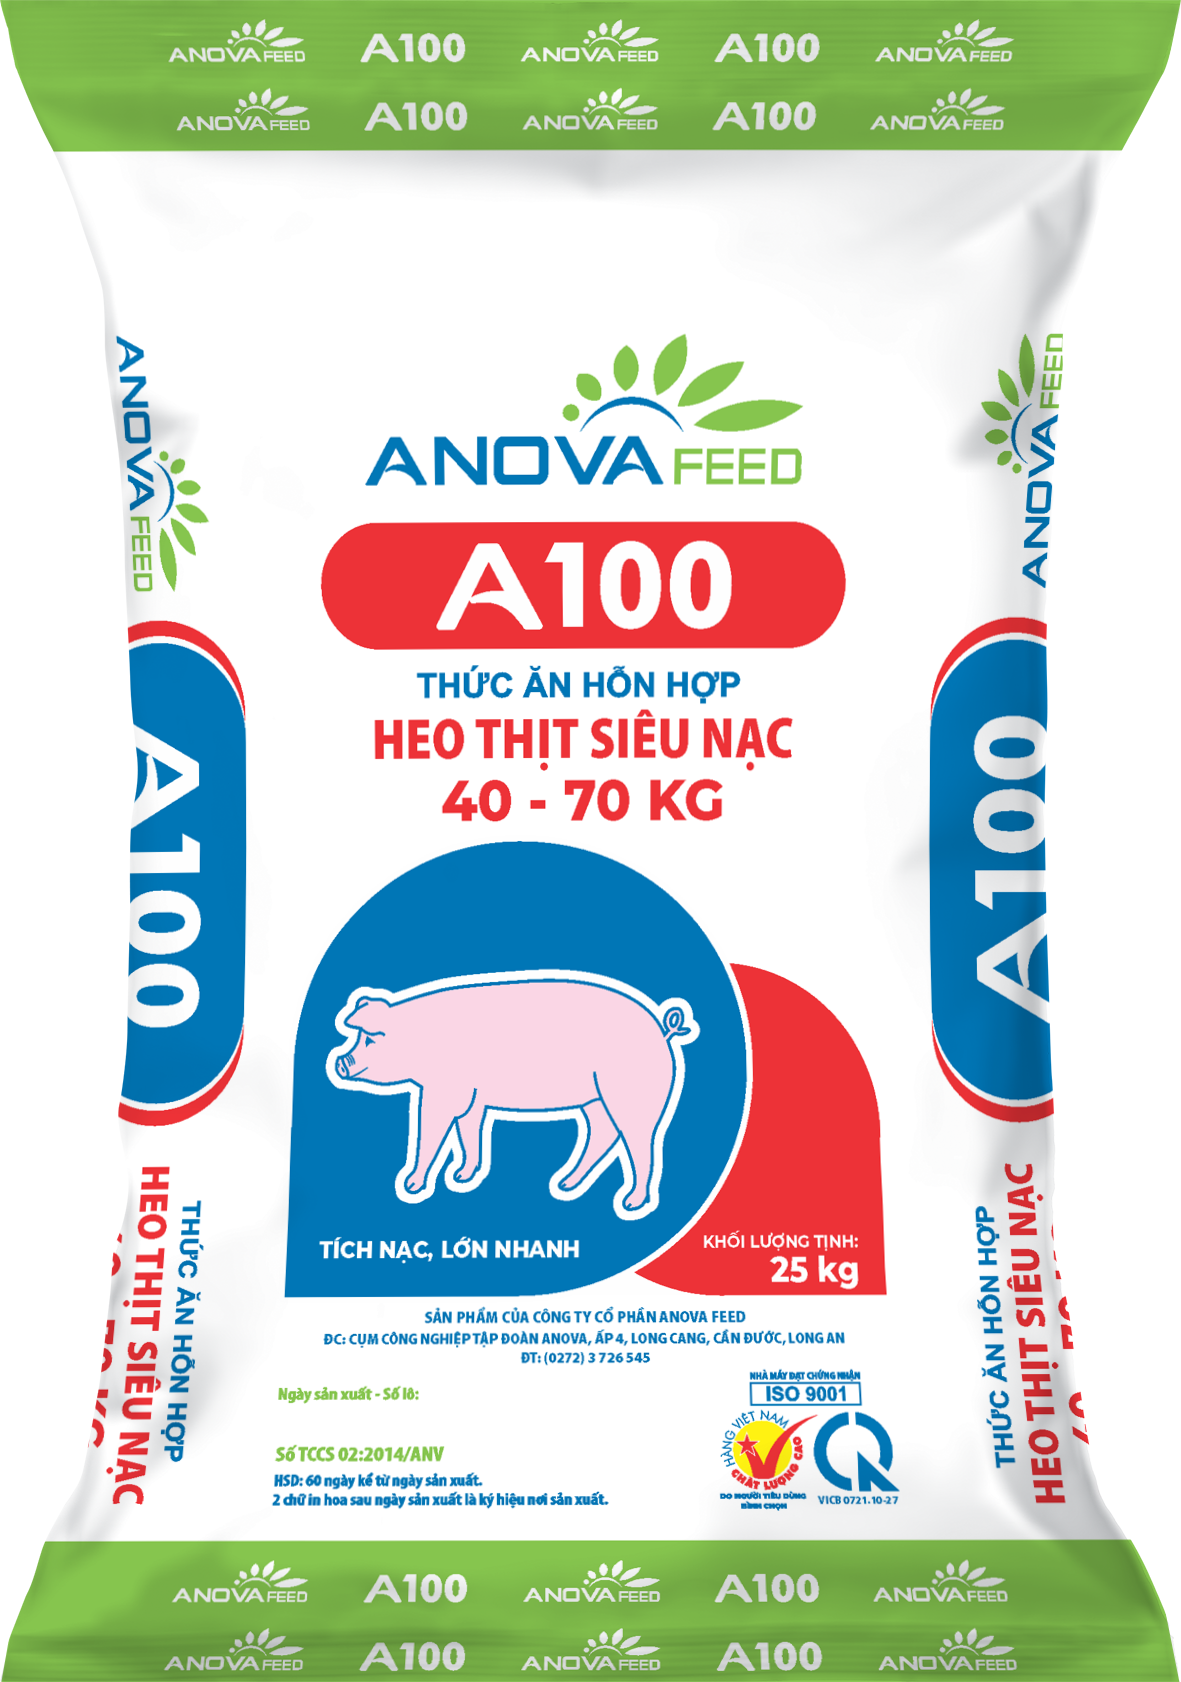 Thức ăn hỗn hợp HEO THỊT SIÊU NẠC 40 - 70kg A100